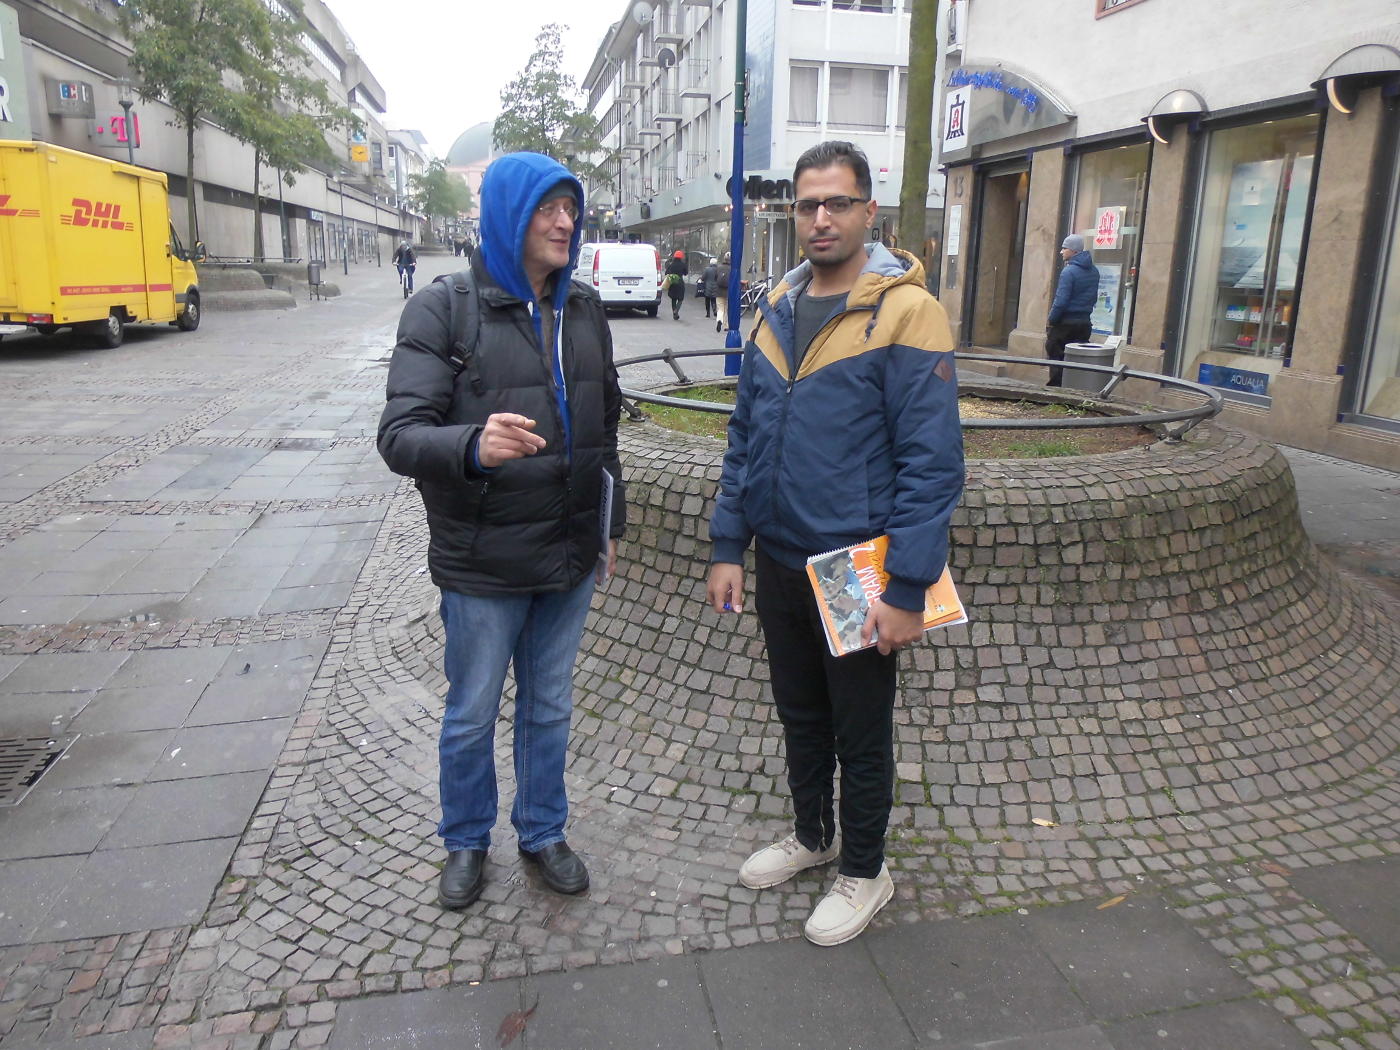 Jehovas Zeugen in Darmstadt und ein Moslem